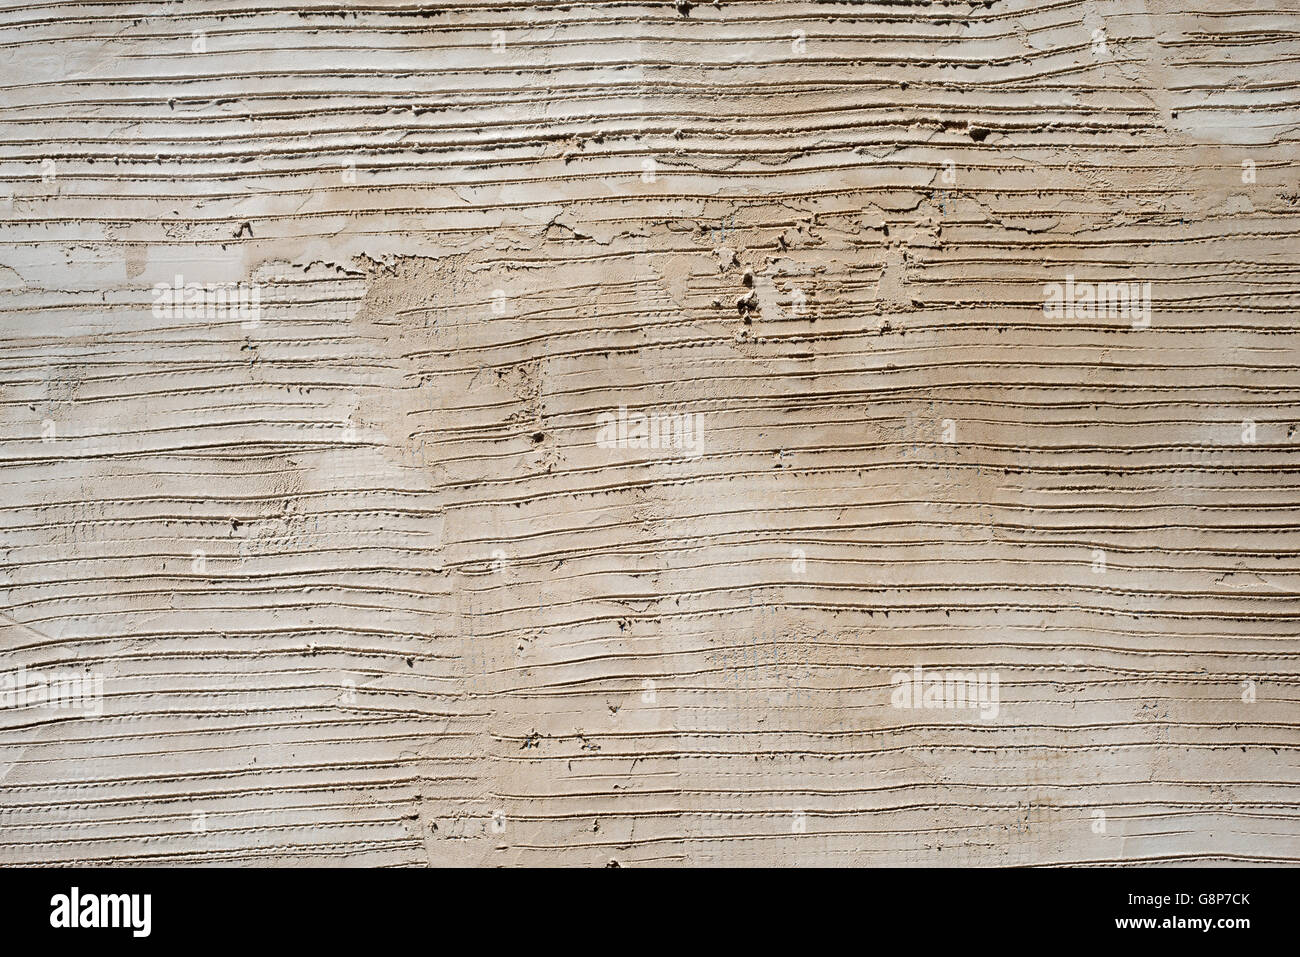 Concrete Linee Di Cemento Pattern Texture Close Up Dettaglio Foto Stock Alamy